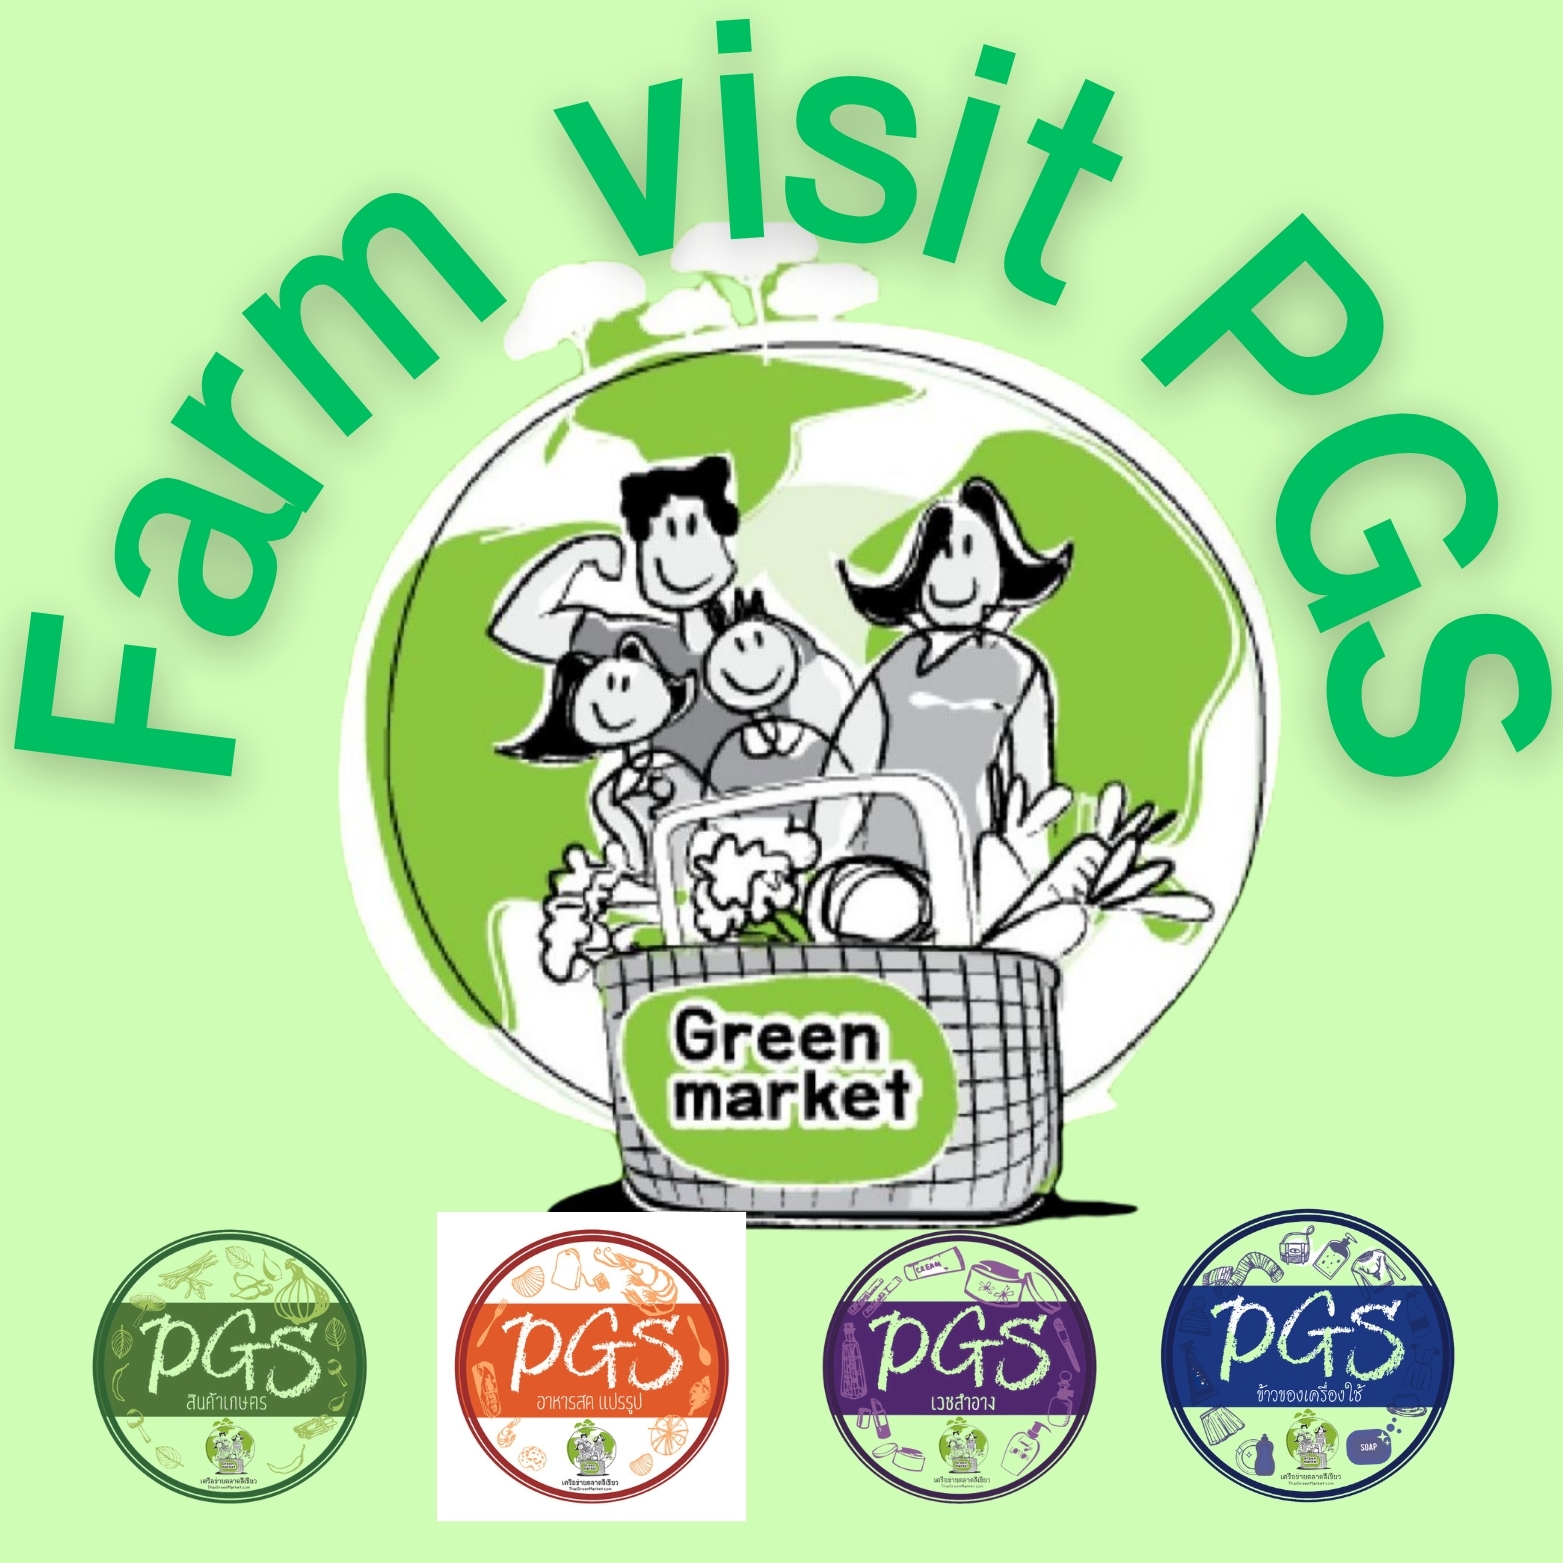 กิจกรรม Farm Visit , ตรวจเยี่ยม PGS. @ ฟาร์มสานฝันปันรัก , ฟาร์มไฮ่ฮัก จ.ราชบุรี 16 สิงหาคม 66